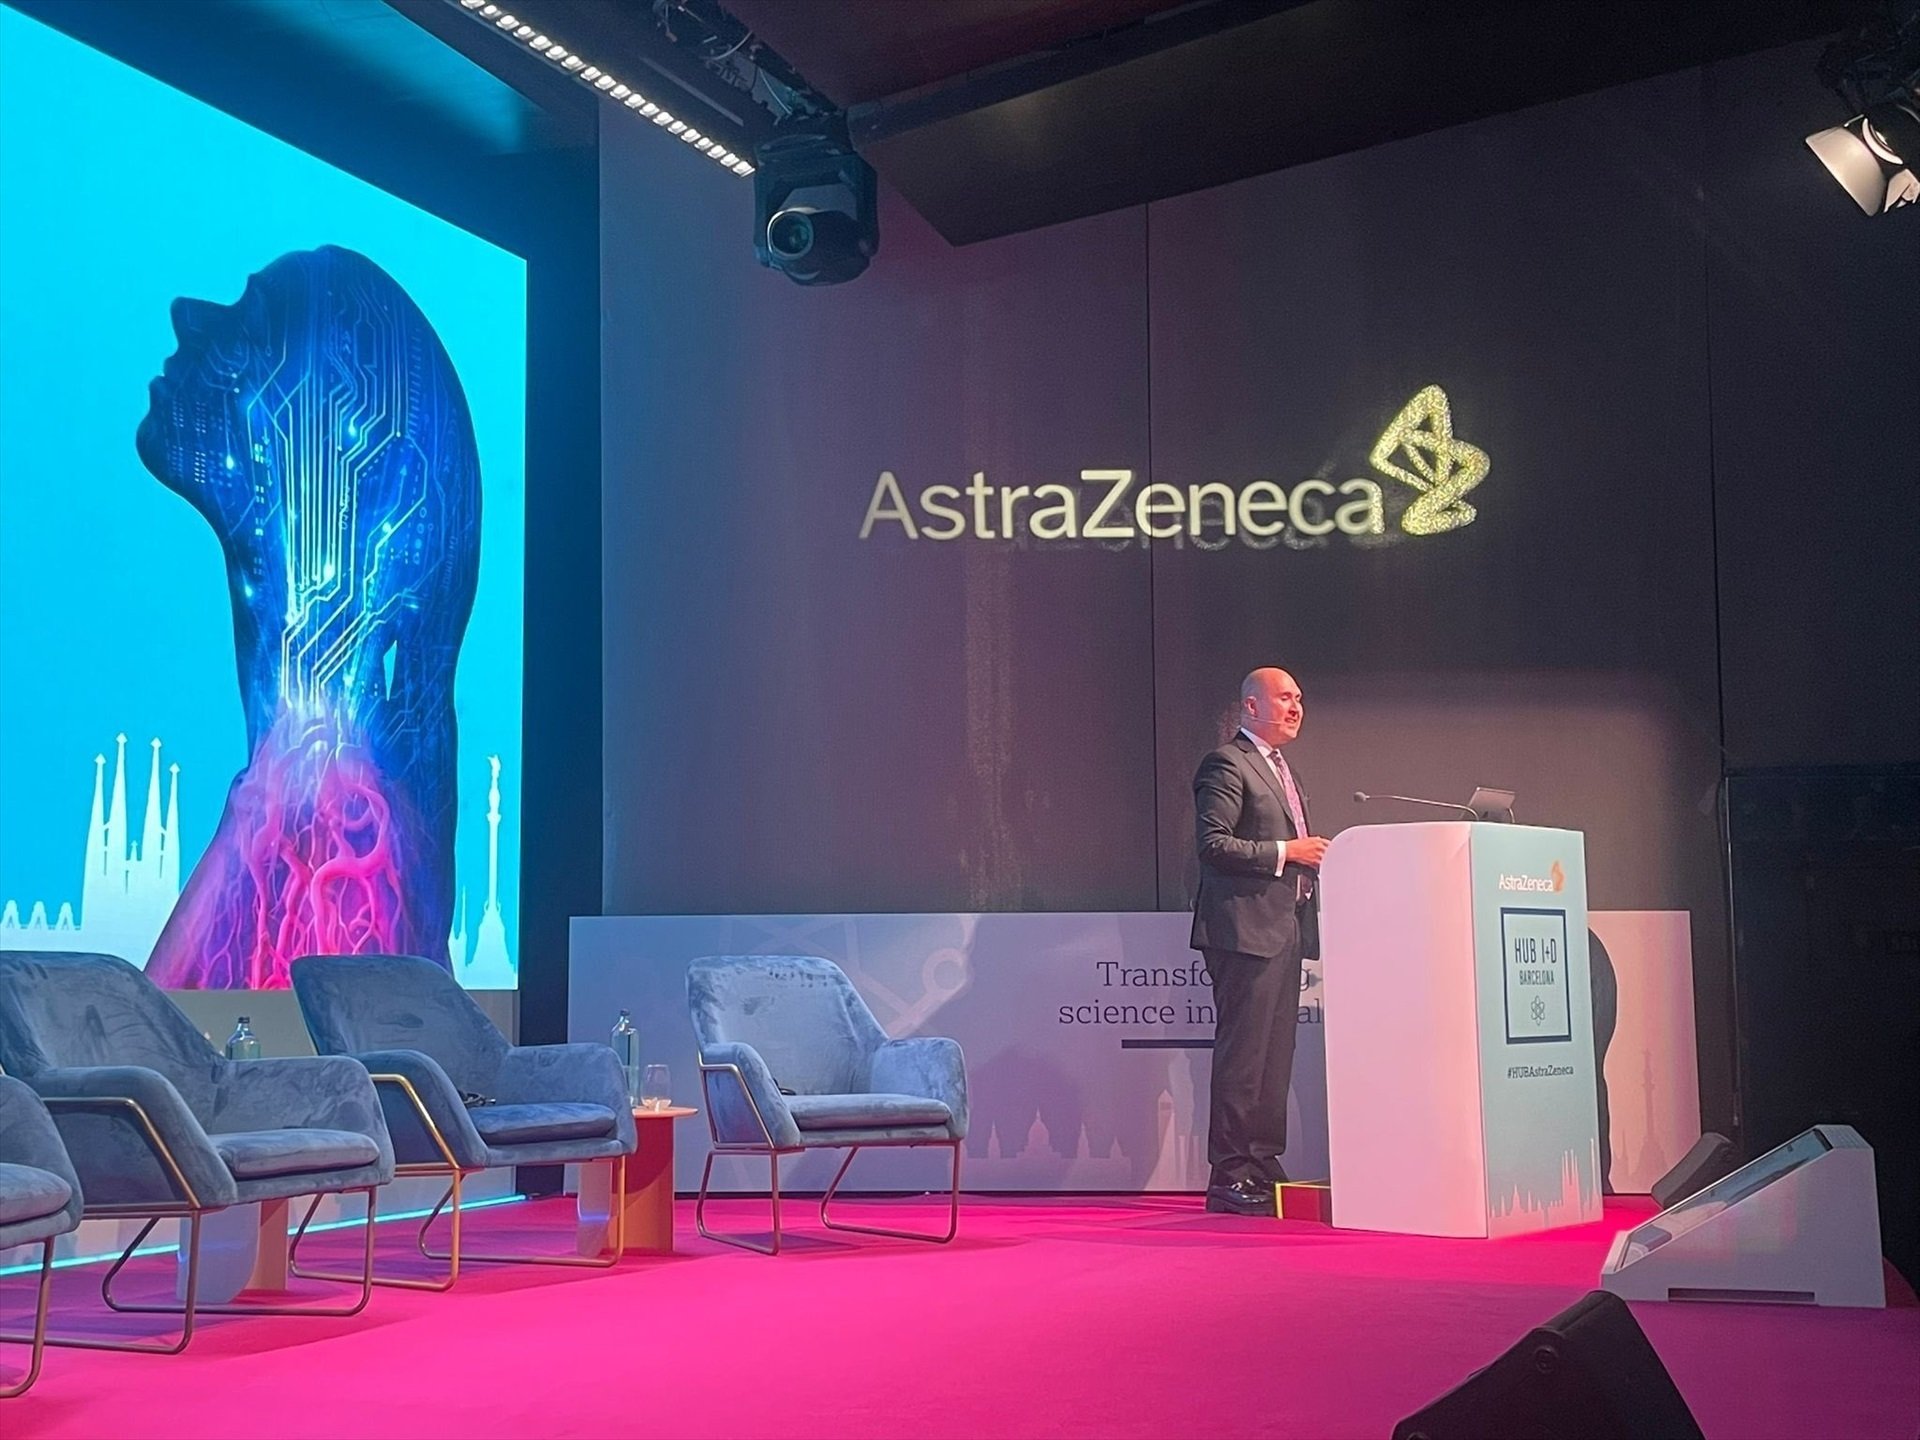 AstraZeneca invertirà 800 milions en un 'hub' d'innovació en salut a Barcelona